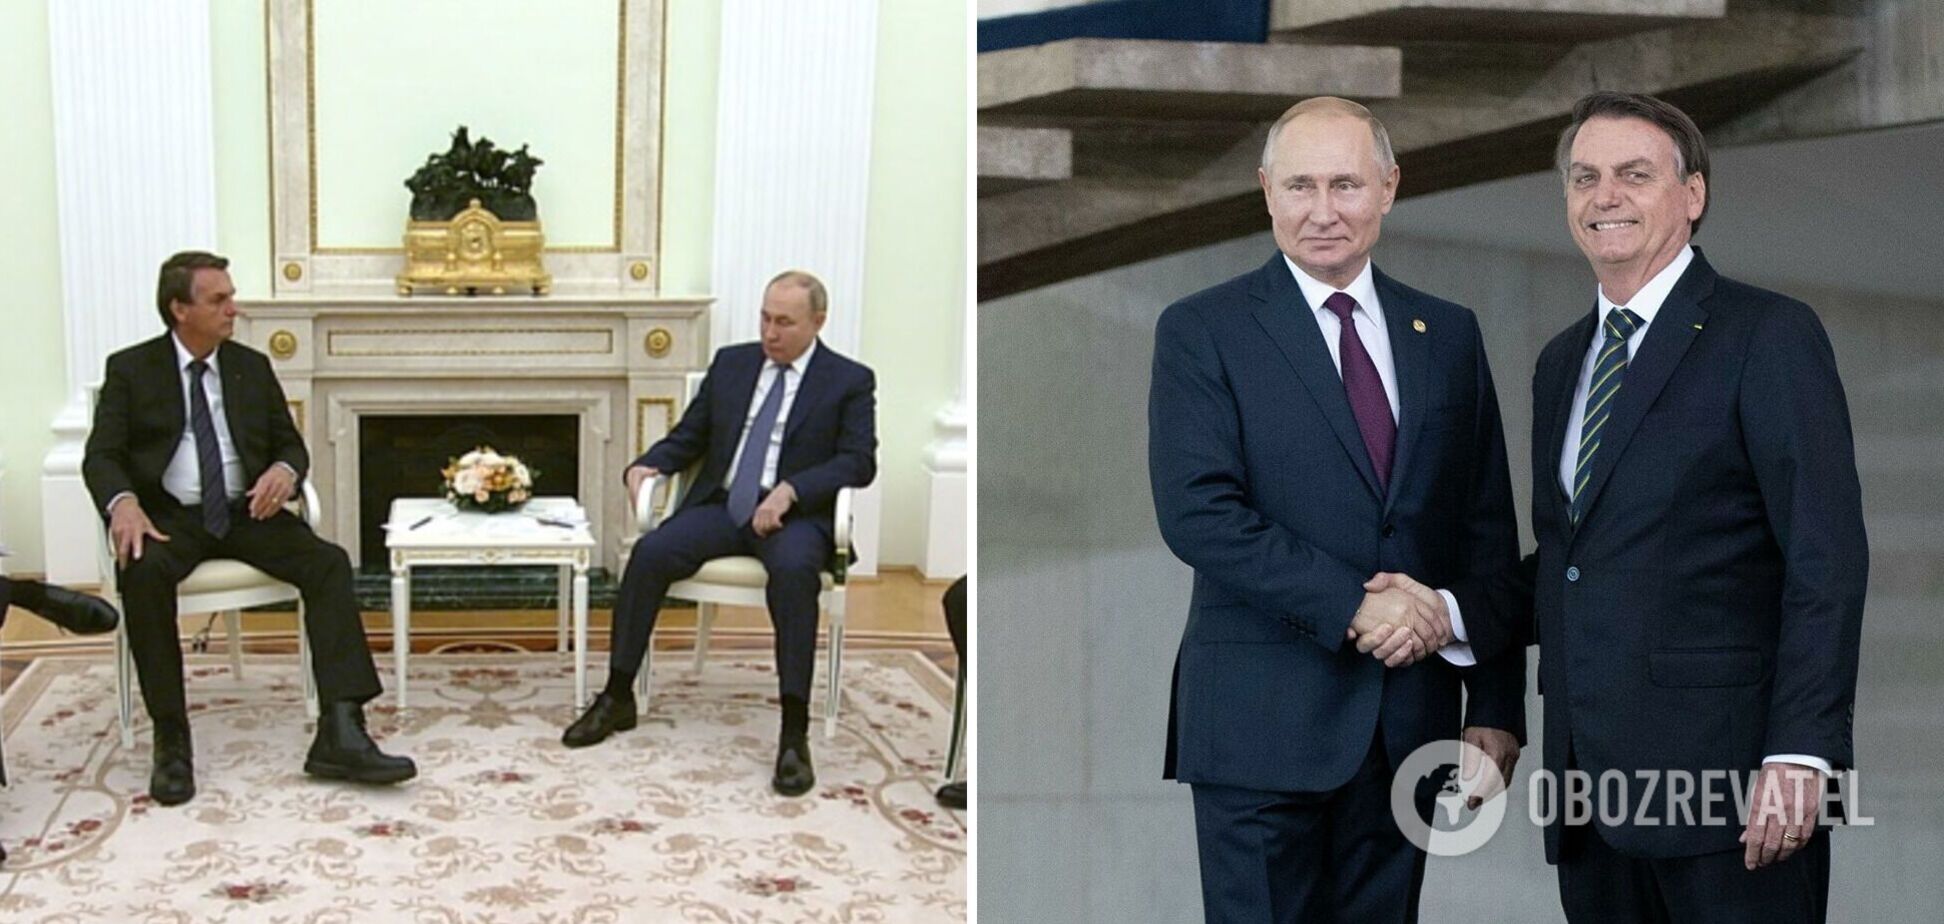 Путін обмінявся з 'антивакцинатором' Болсонару рукостисканням і сів поруч: у мережі хвиля жартів. Відео